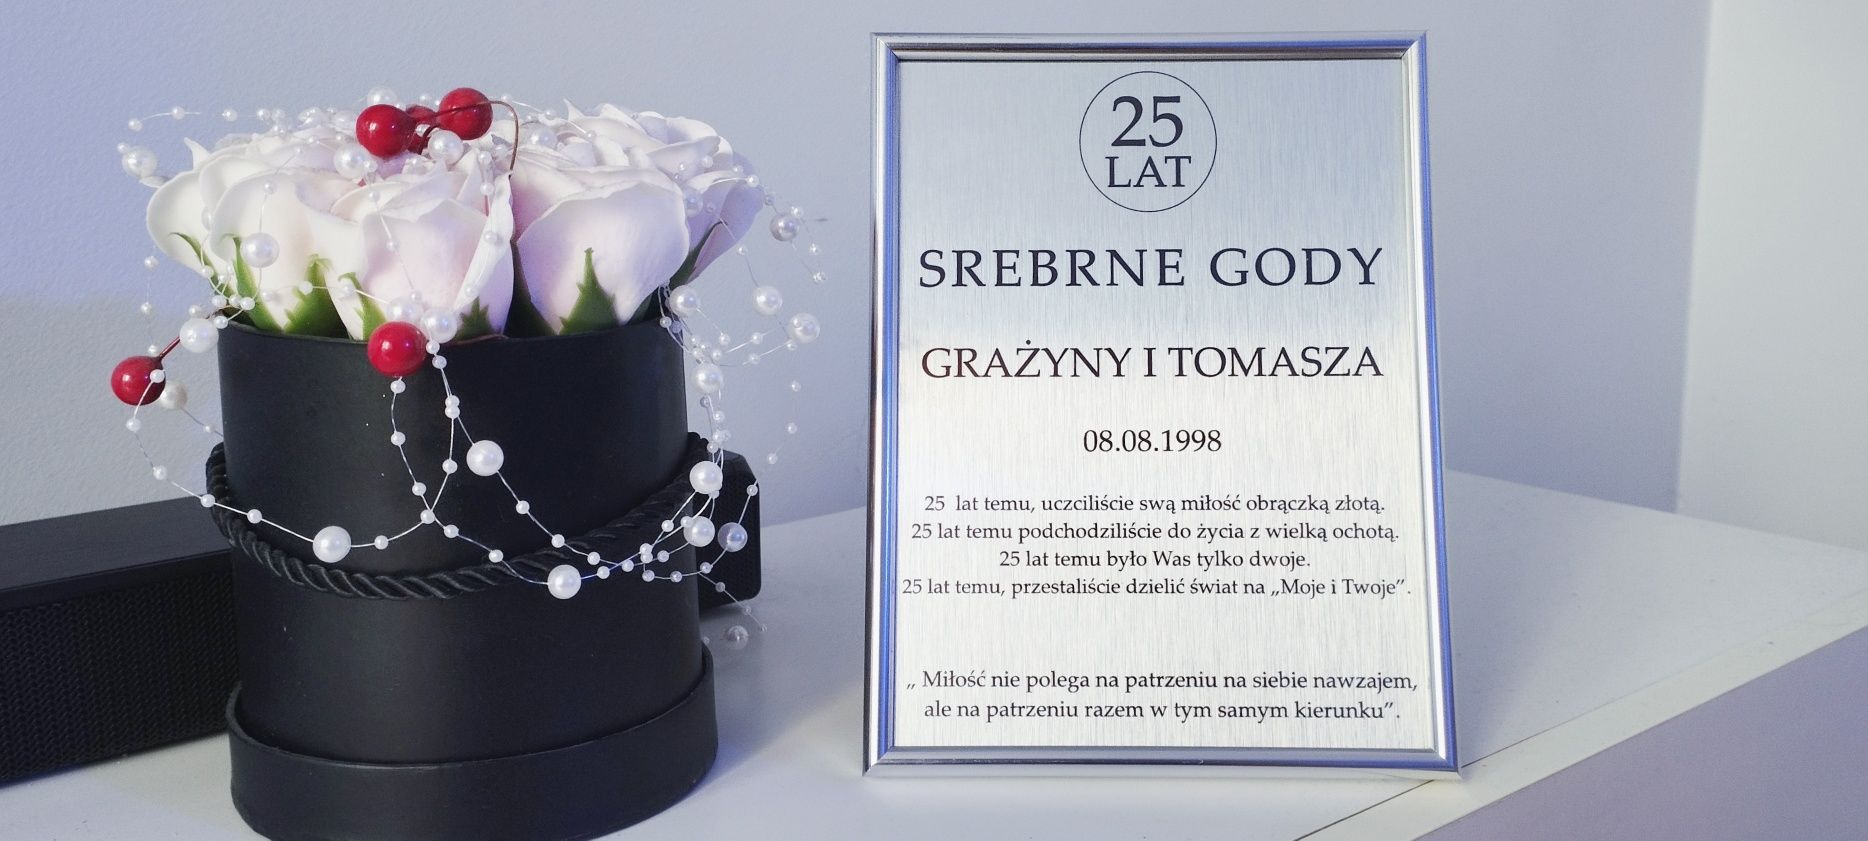 Elegancki srebrny złoty dyplom na rocznicę ślubu certyfikaty producent